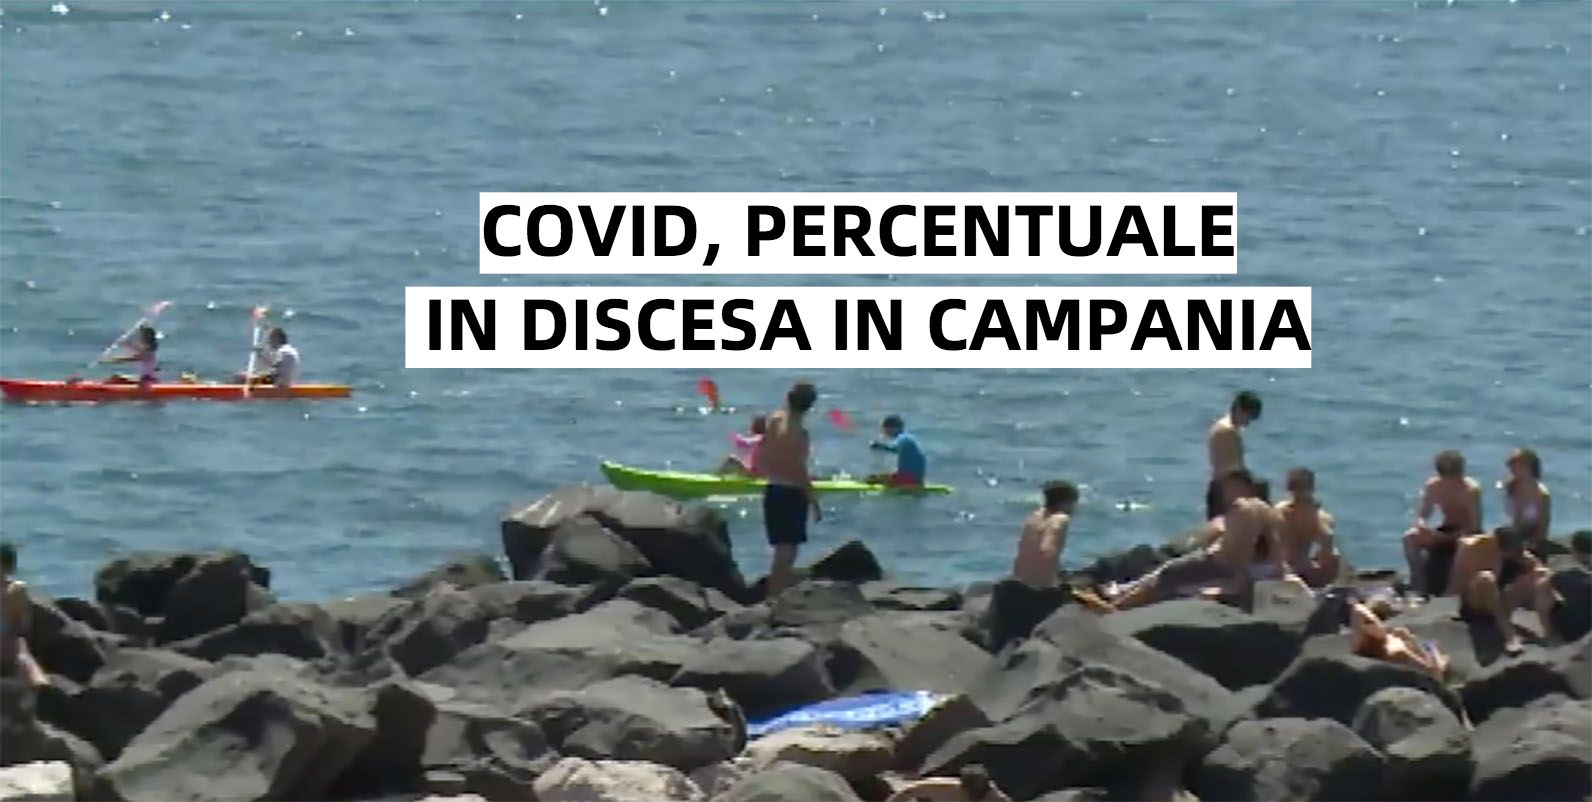 Covid, la percentuale scende al 6,37% in Campania